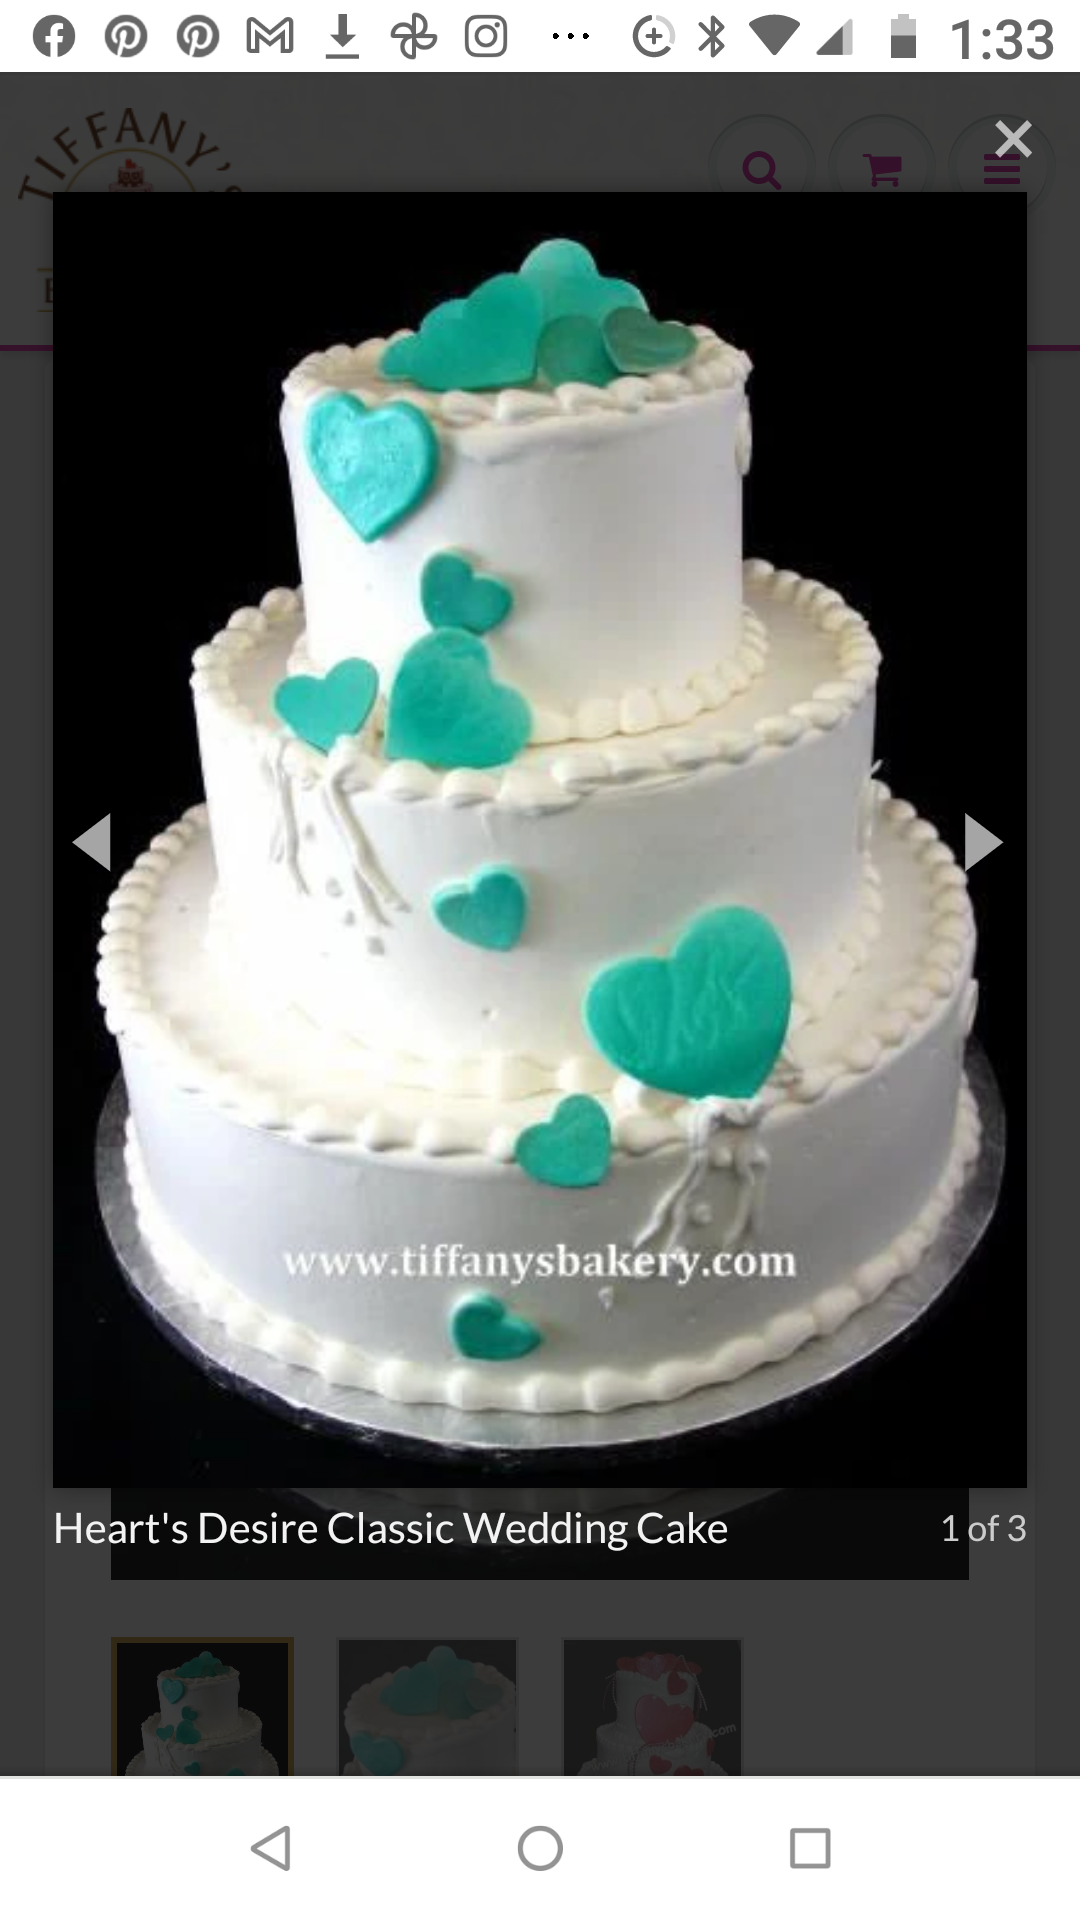 Classic Wedding Cakes – Tiffany's Bakery